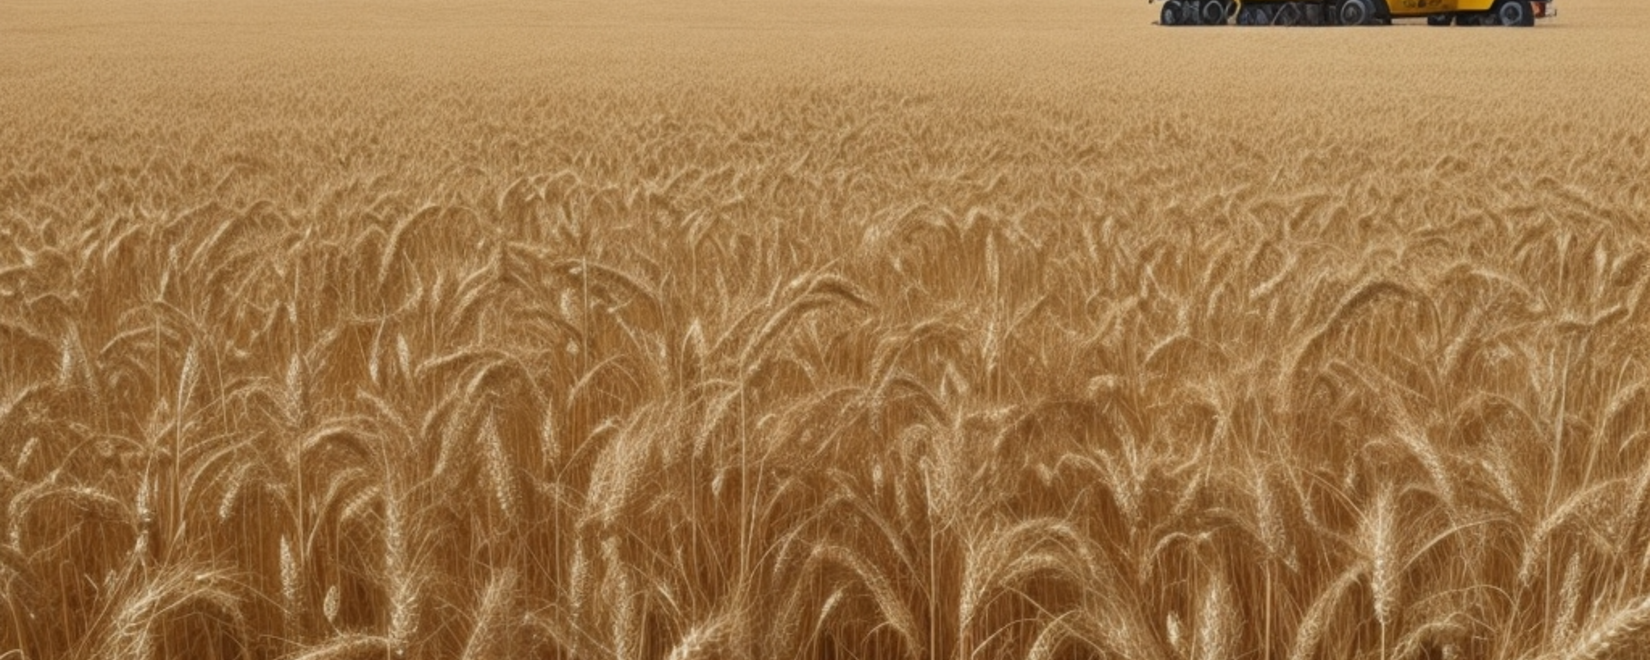 Экспорт твердой пшеницы запрещен Кабмином РФ до мая 2024 года